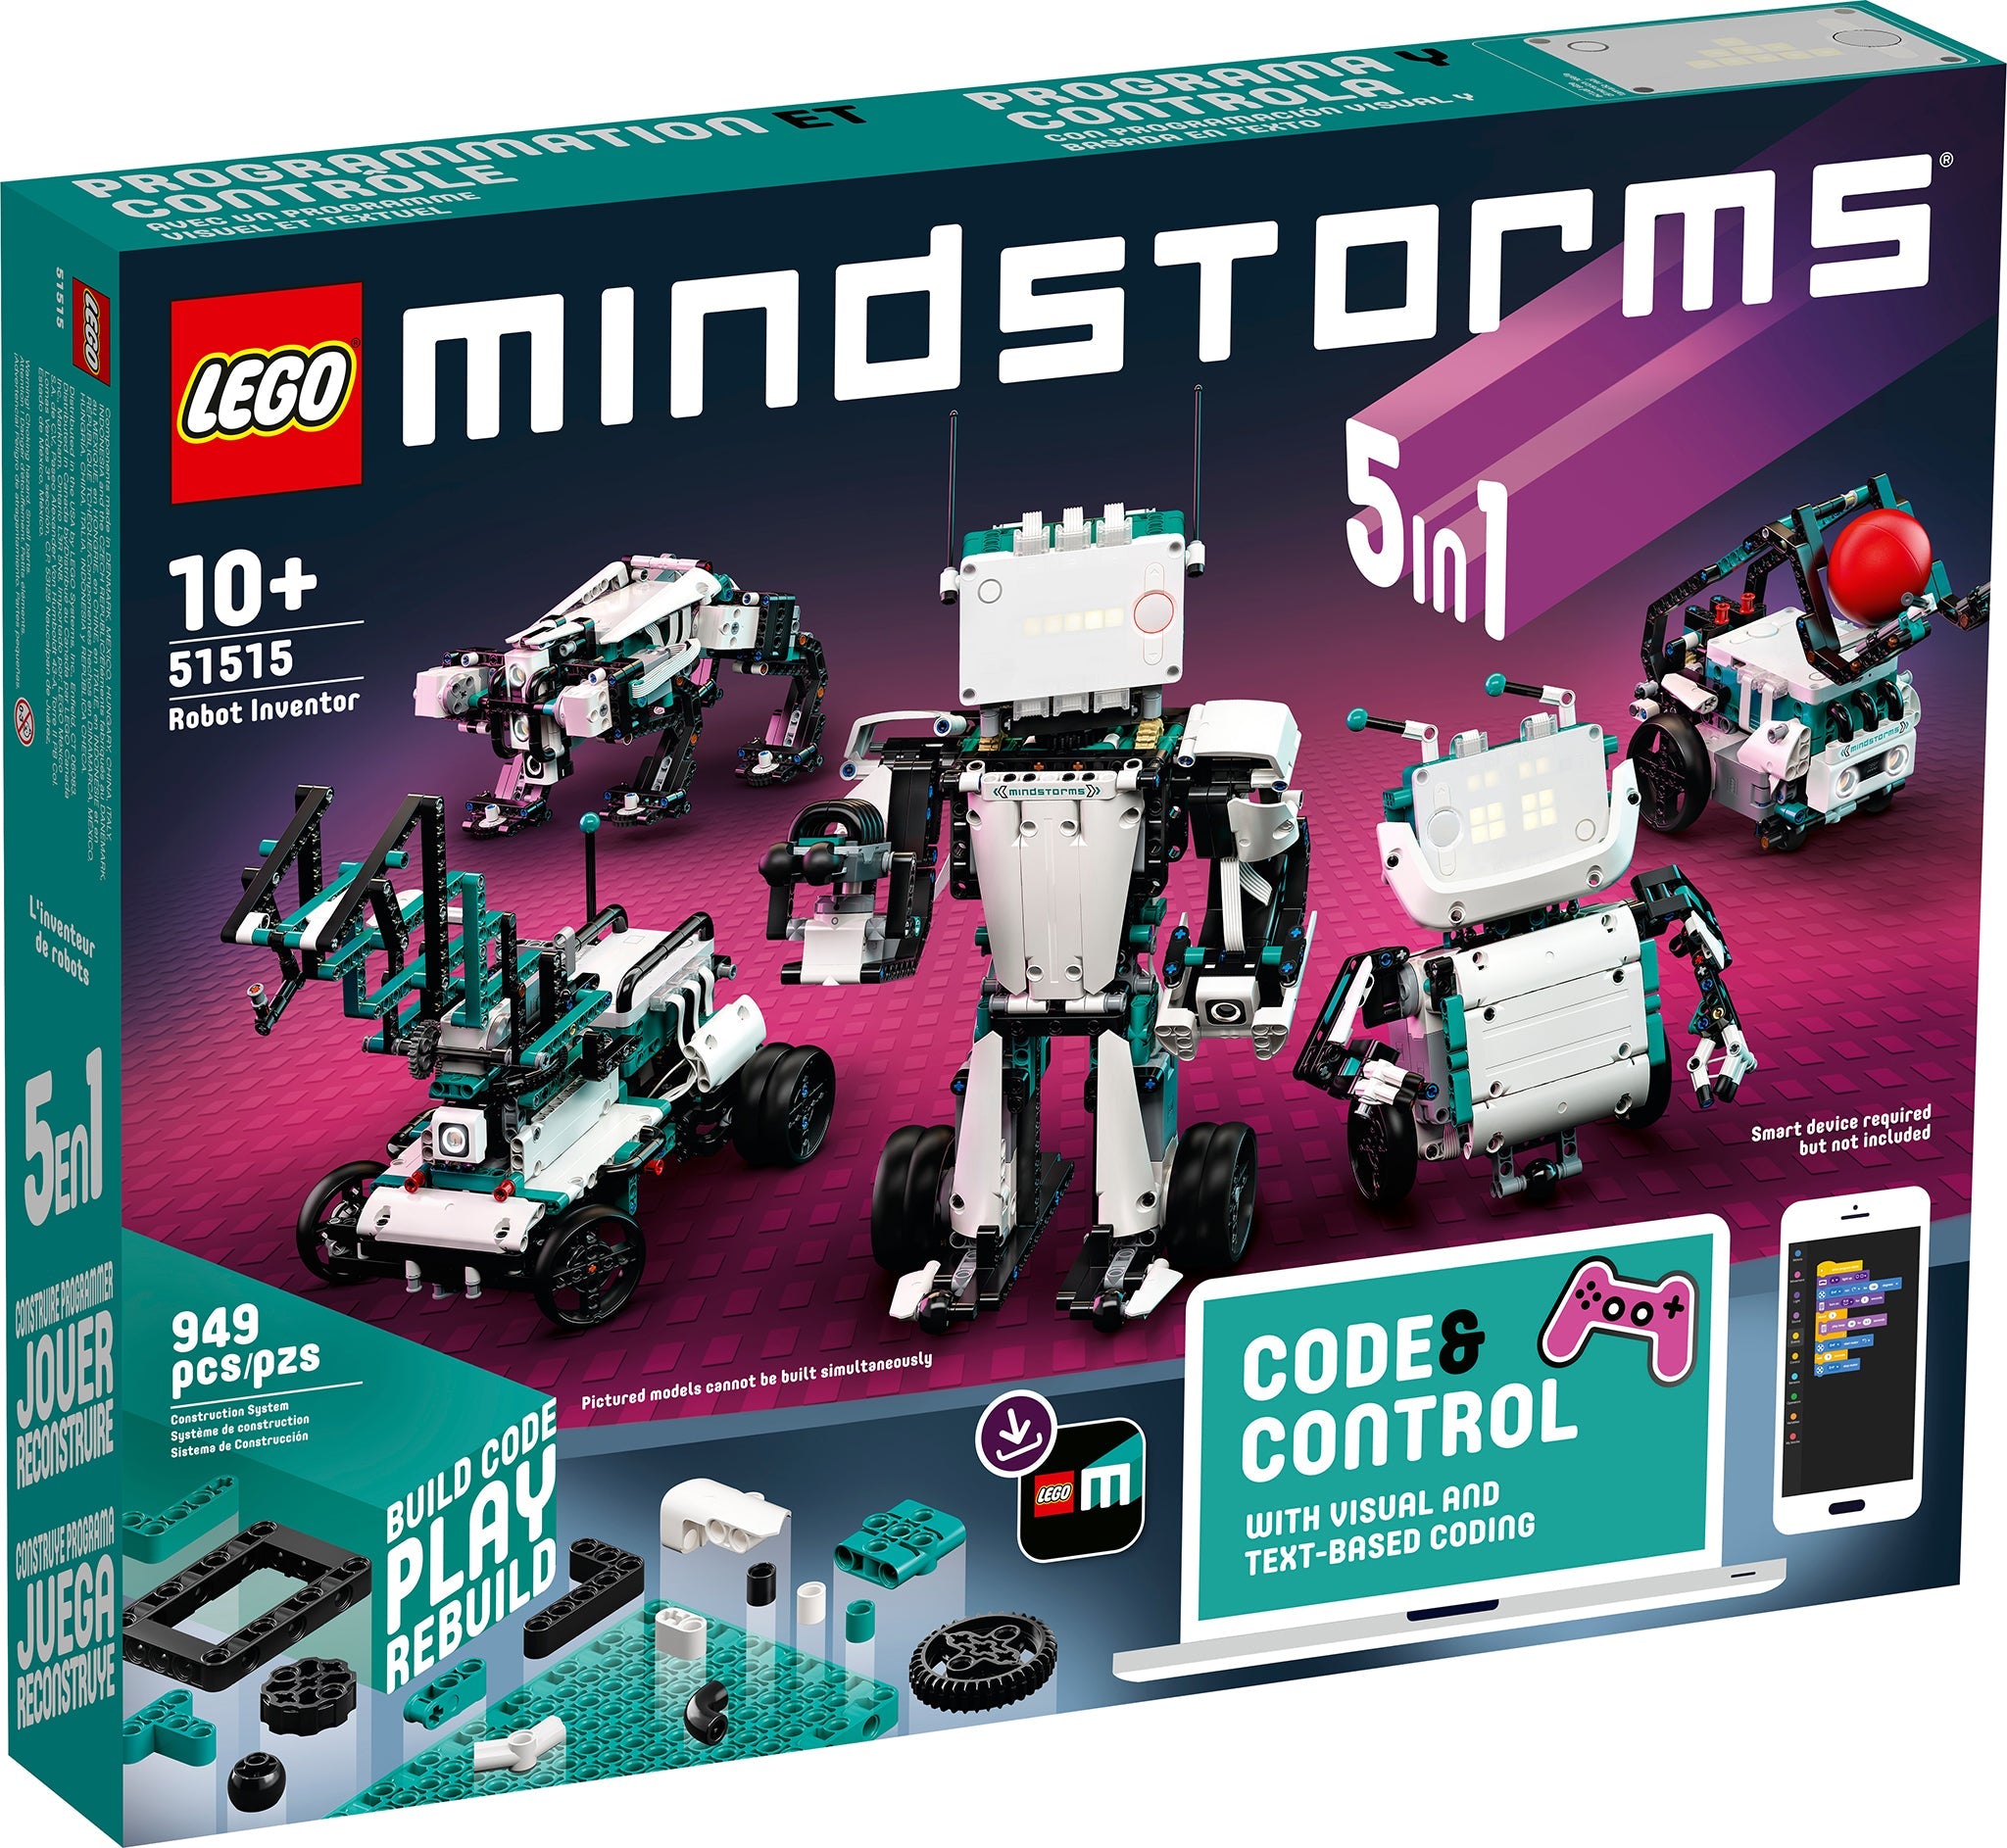 LEGO Mindstorms Robot Inventor (51515) - im GOLDSTIEN.SHOP verfügbar mit Gratisversand ab Schweizer Lager! (5702016369861)